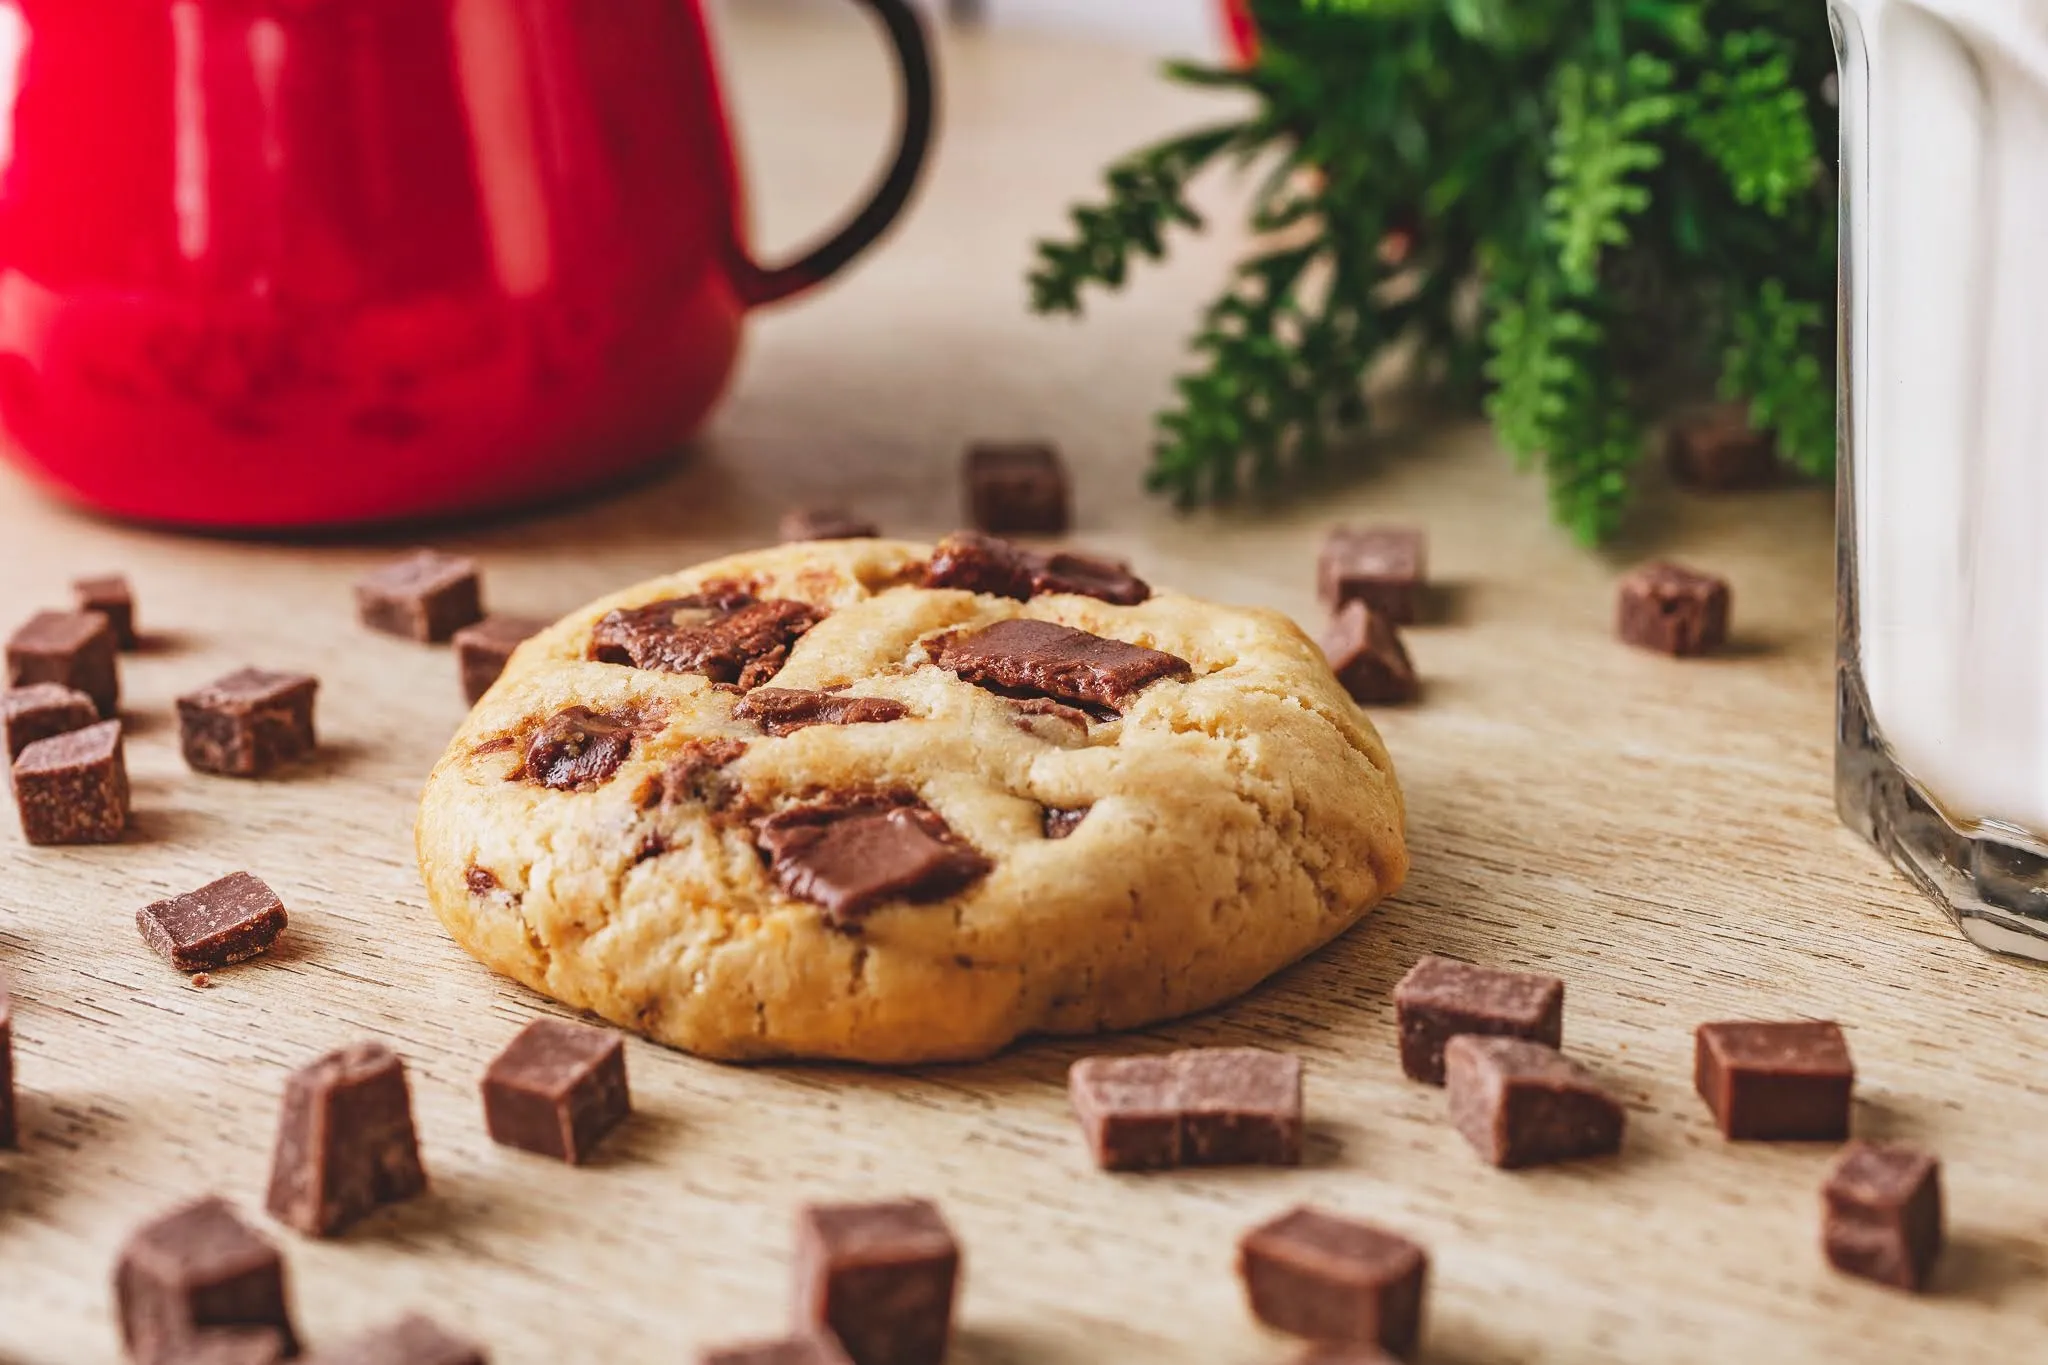 American Cookies é
especializada em cookies americanos tradicionais e recheados